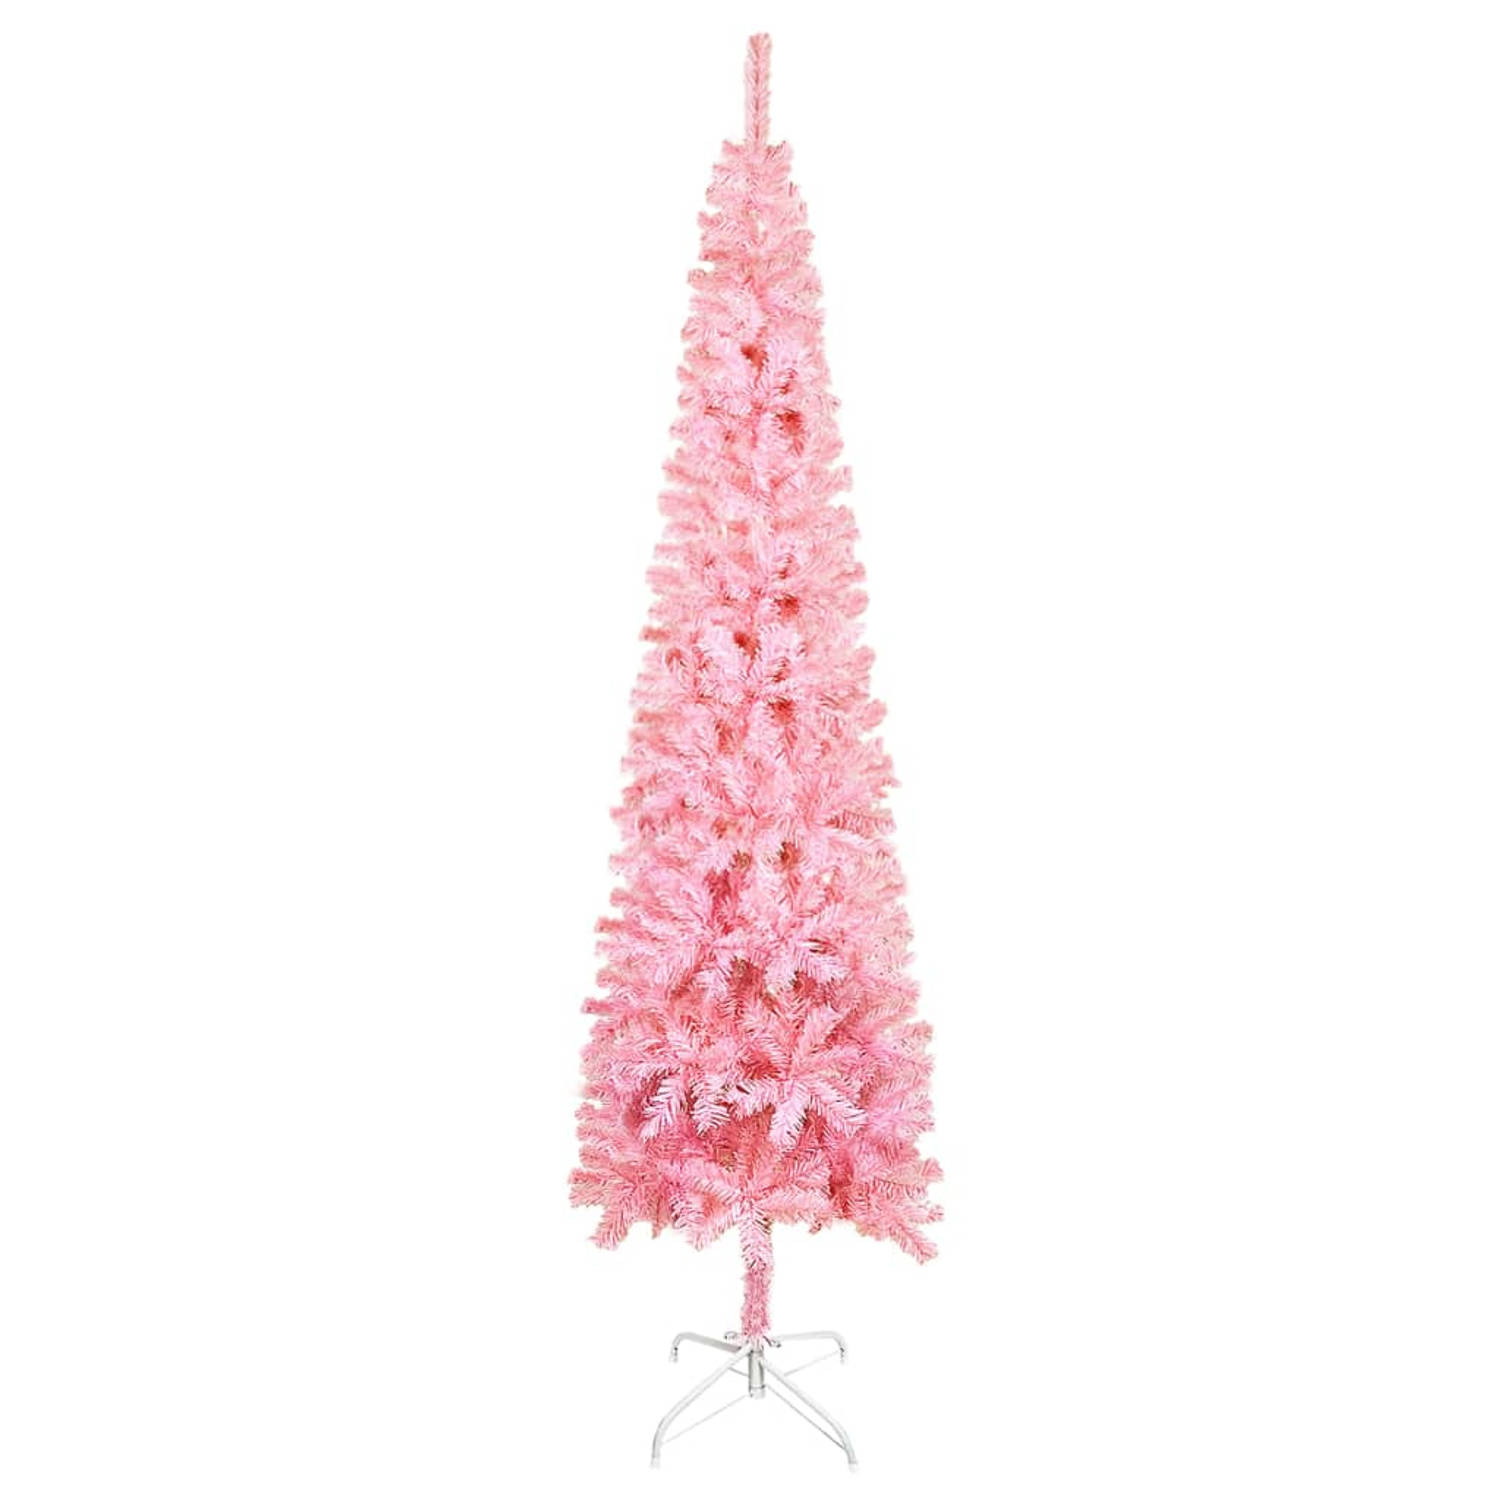 The Living Store Kerstboom Pink PVC 210 cm - 55 cm breedte - levensecht - verstelbare takken - stalen standaard - herbruikbaar - roze - PVC en staal - 435 uiteinden - montage verei